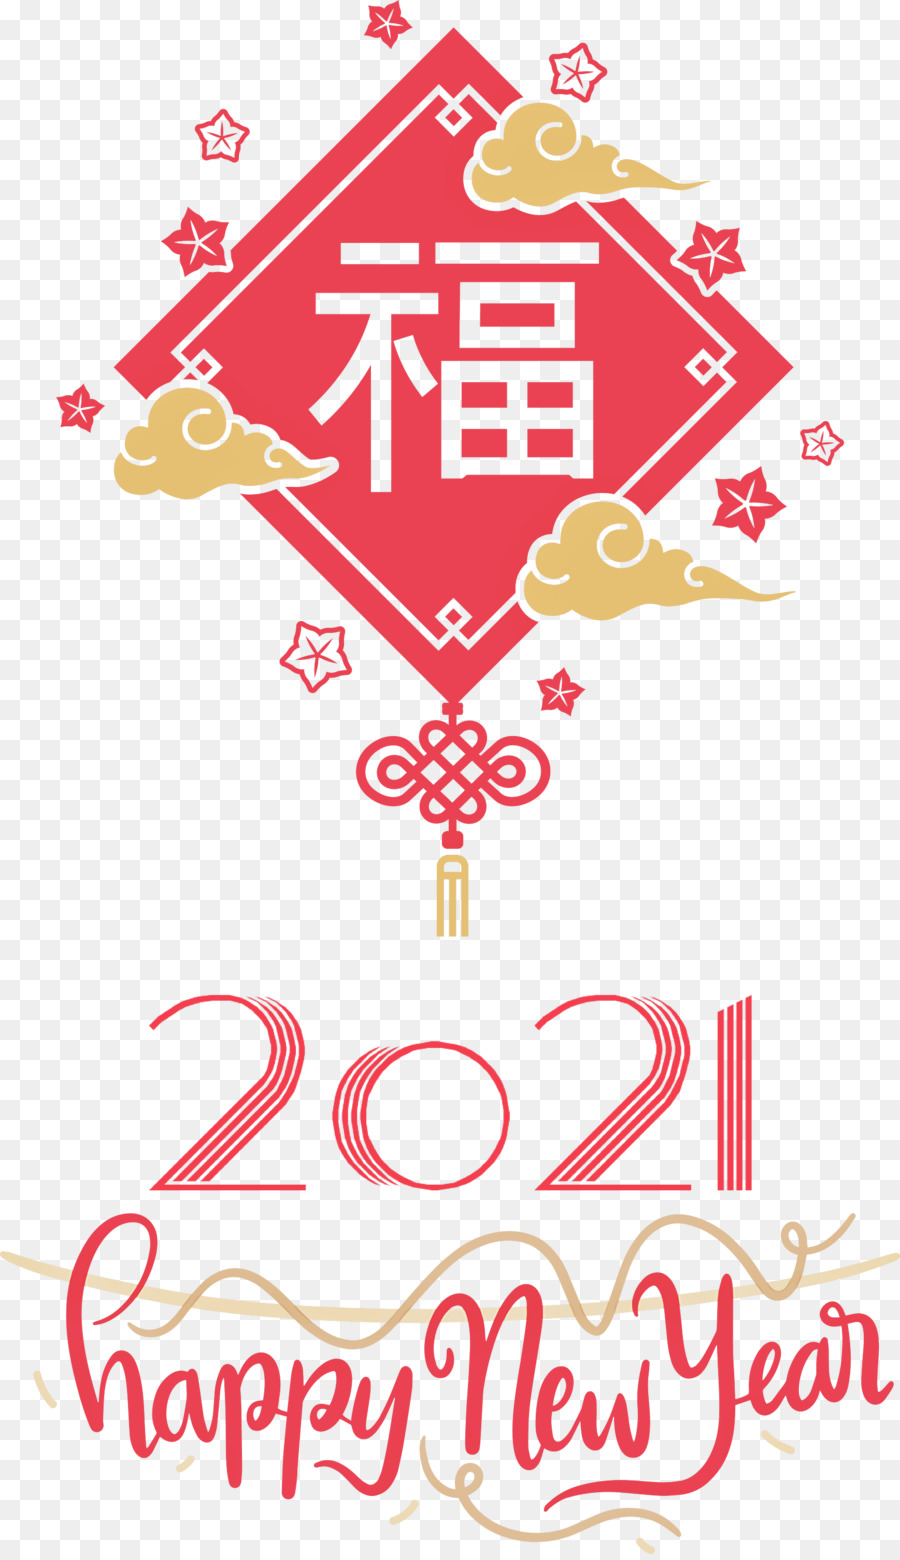 Chúc mừng năm mới 2021 Tết Nguyên đán Chúc mừng năm mới - 